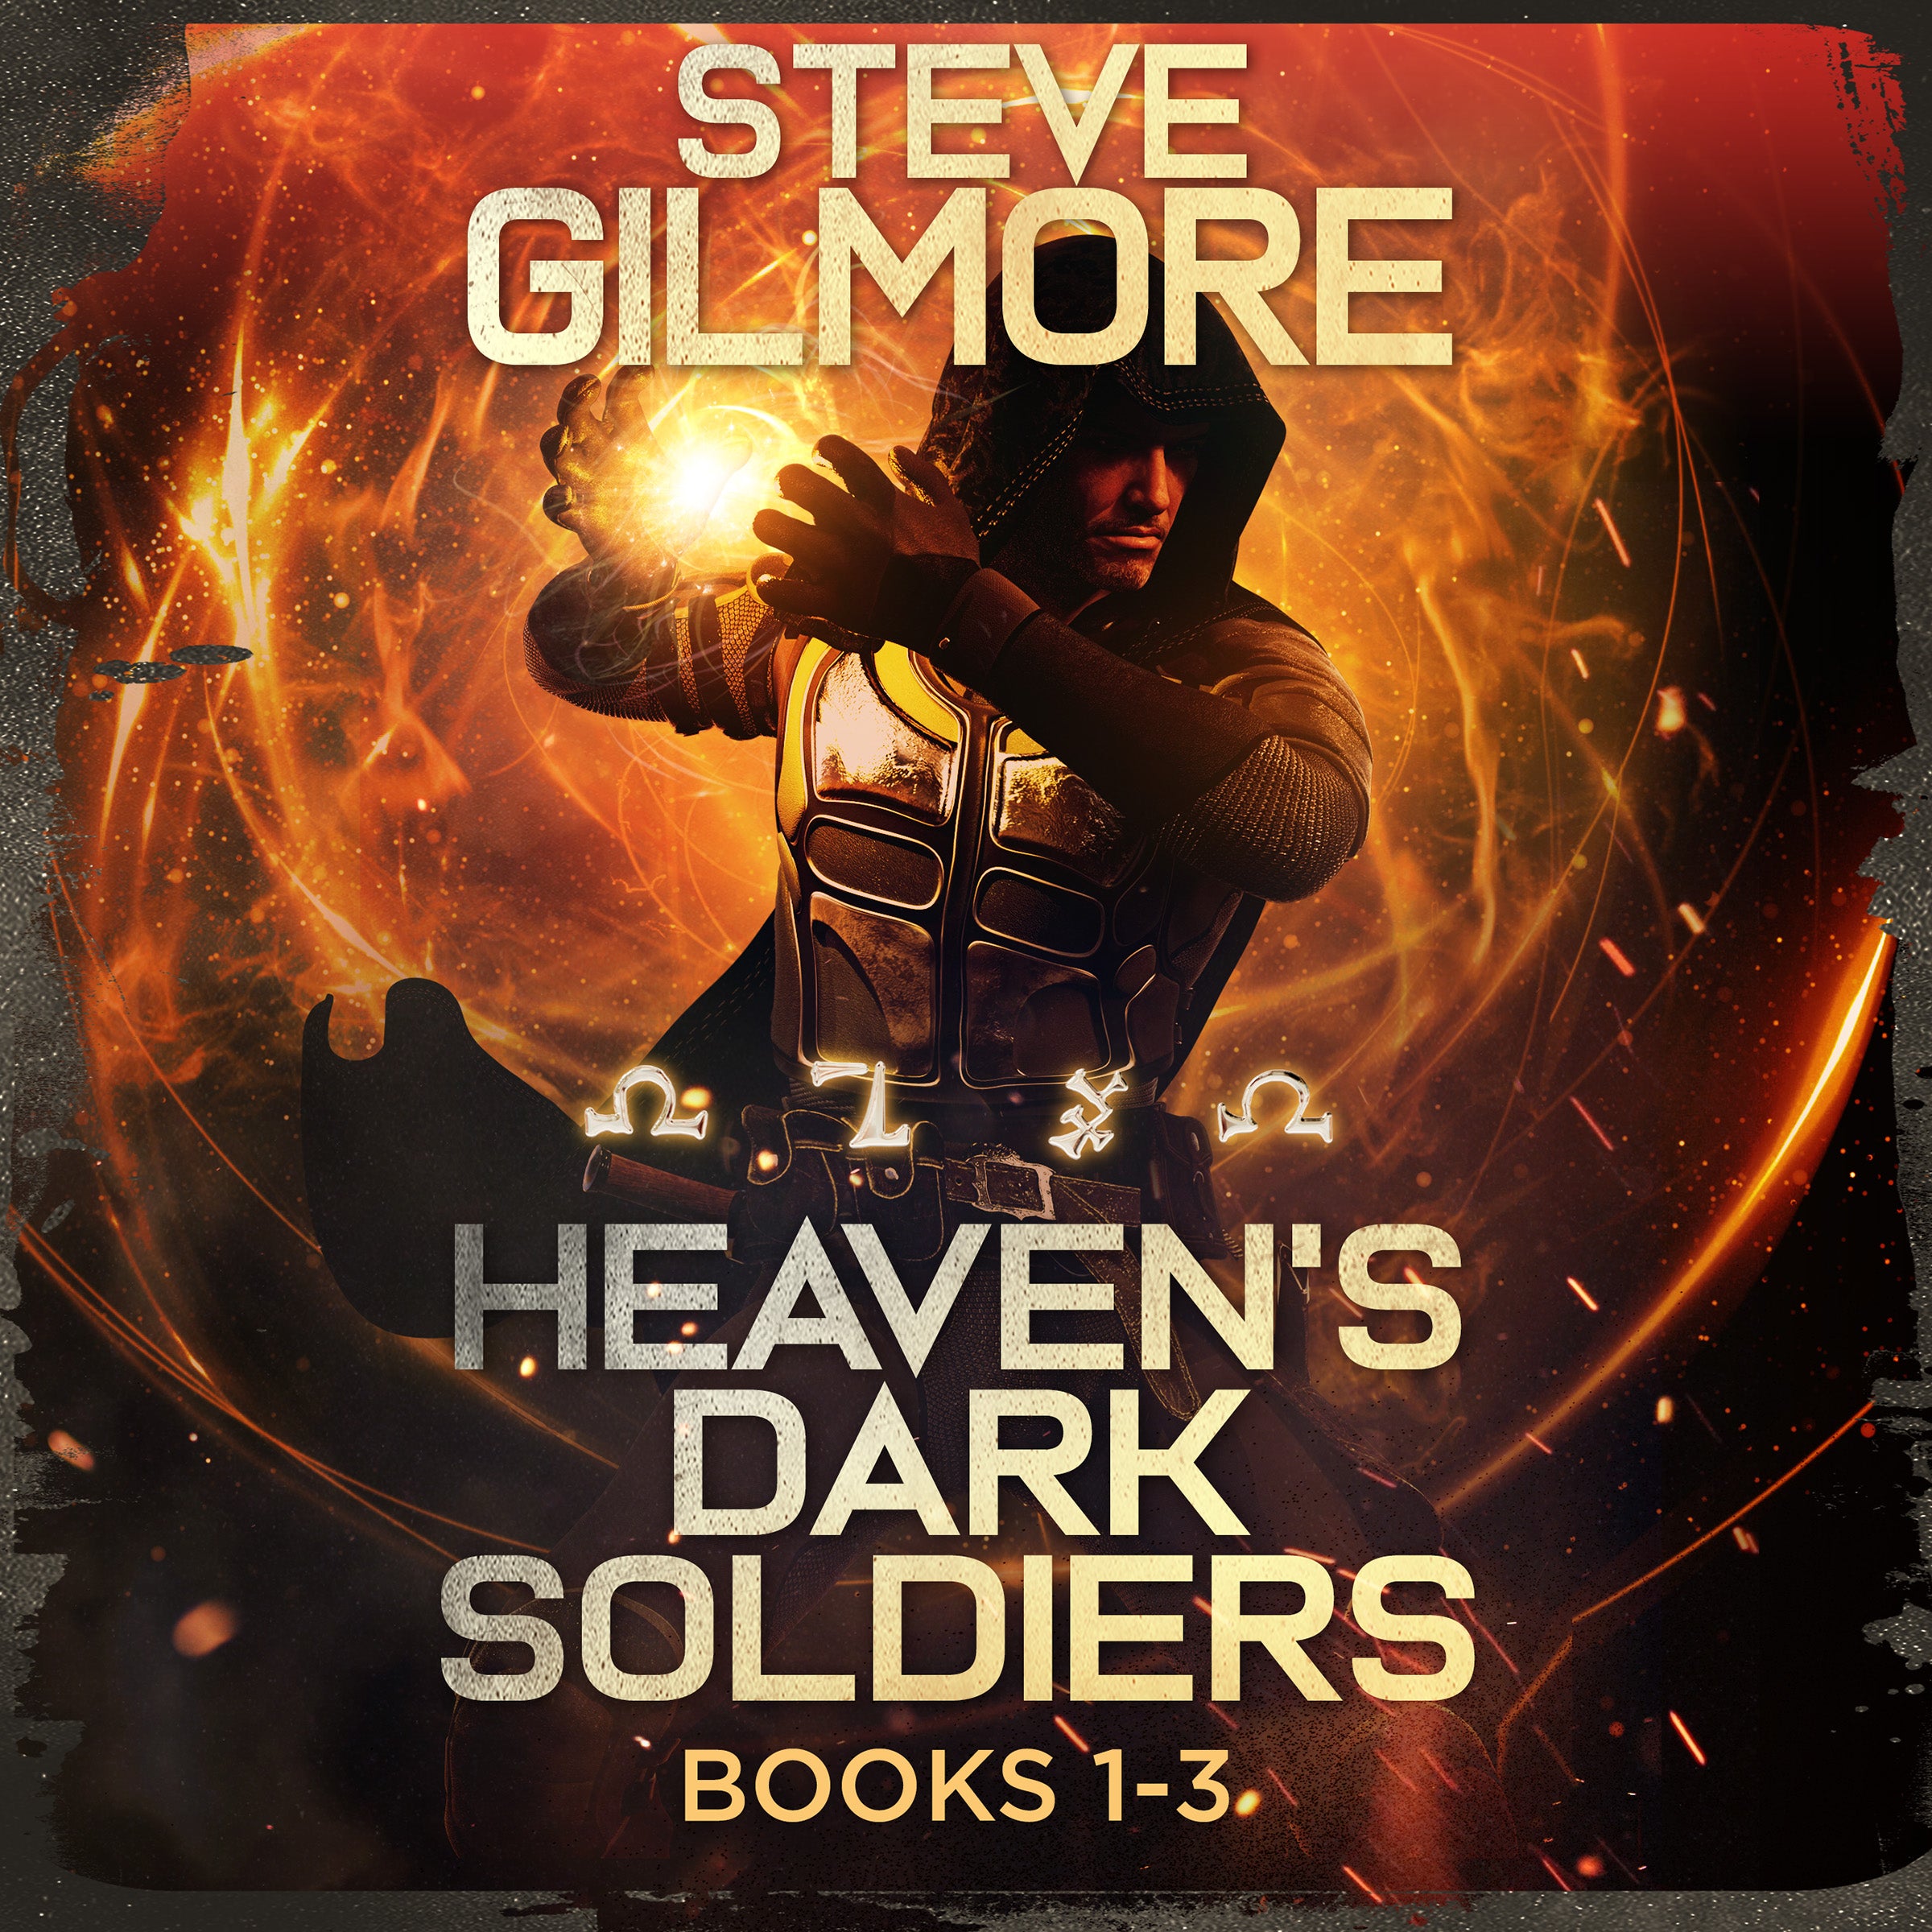 Heaven's Dark Soldiers Audiobooks 1-3 BUNDLE